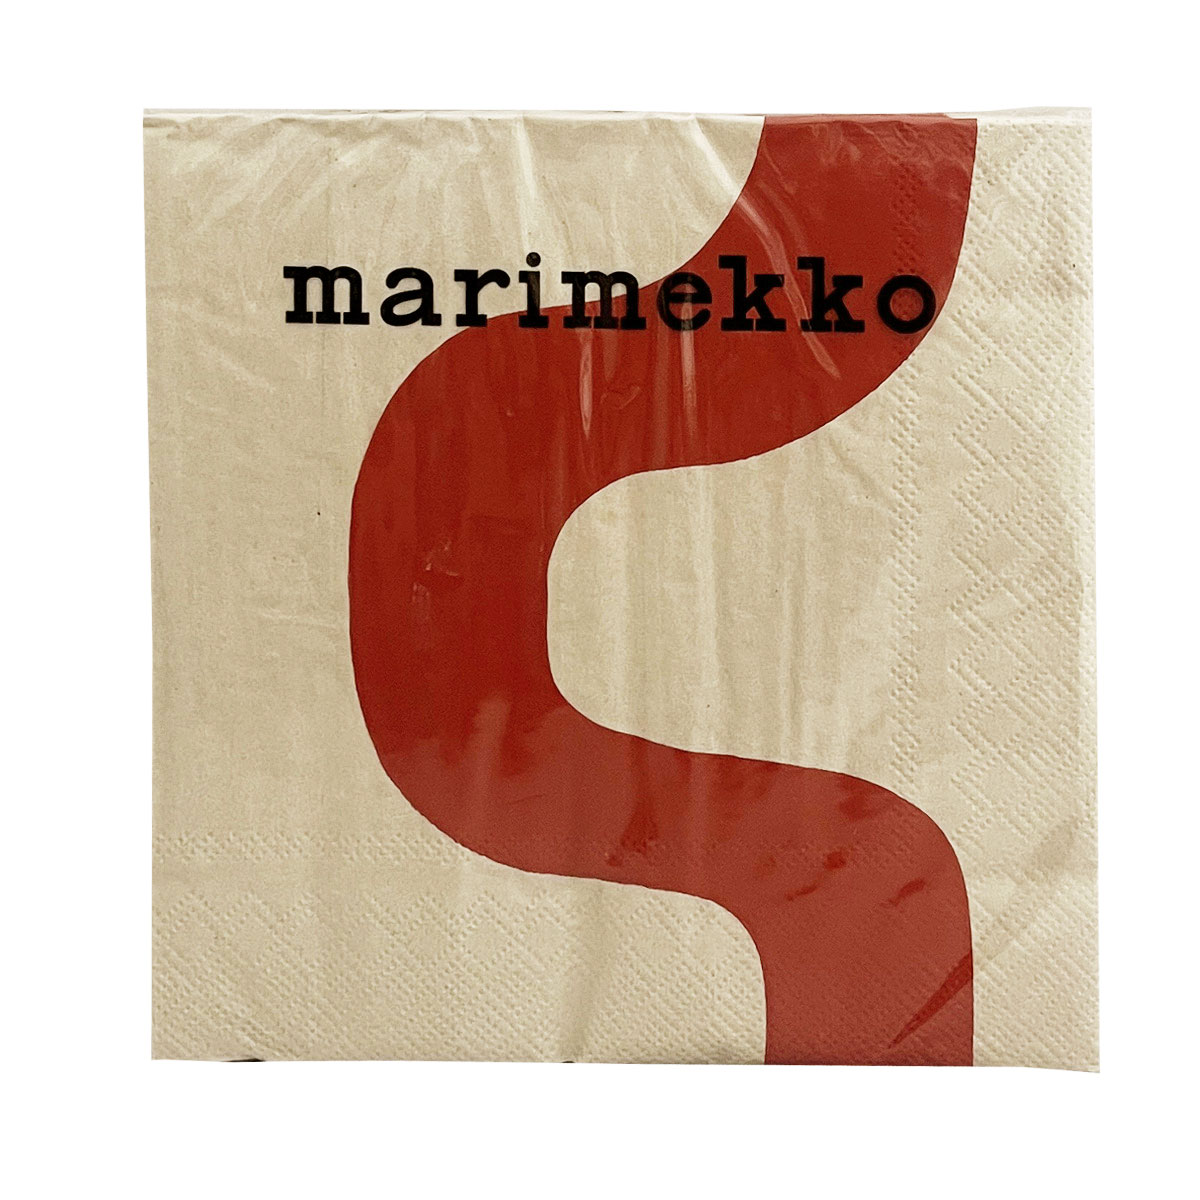 マリメッコ marimekko ペーパーナプキン 紙ナプキン ランチサイズ ihr 20枚 878810 SEIREENI セイレーニ red ライトベージュ+レッド系 北欧